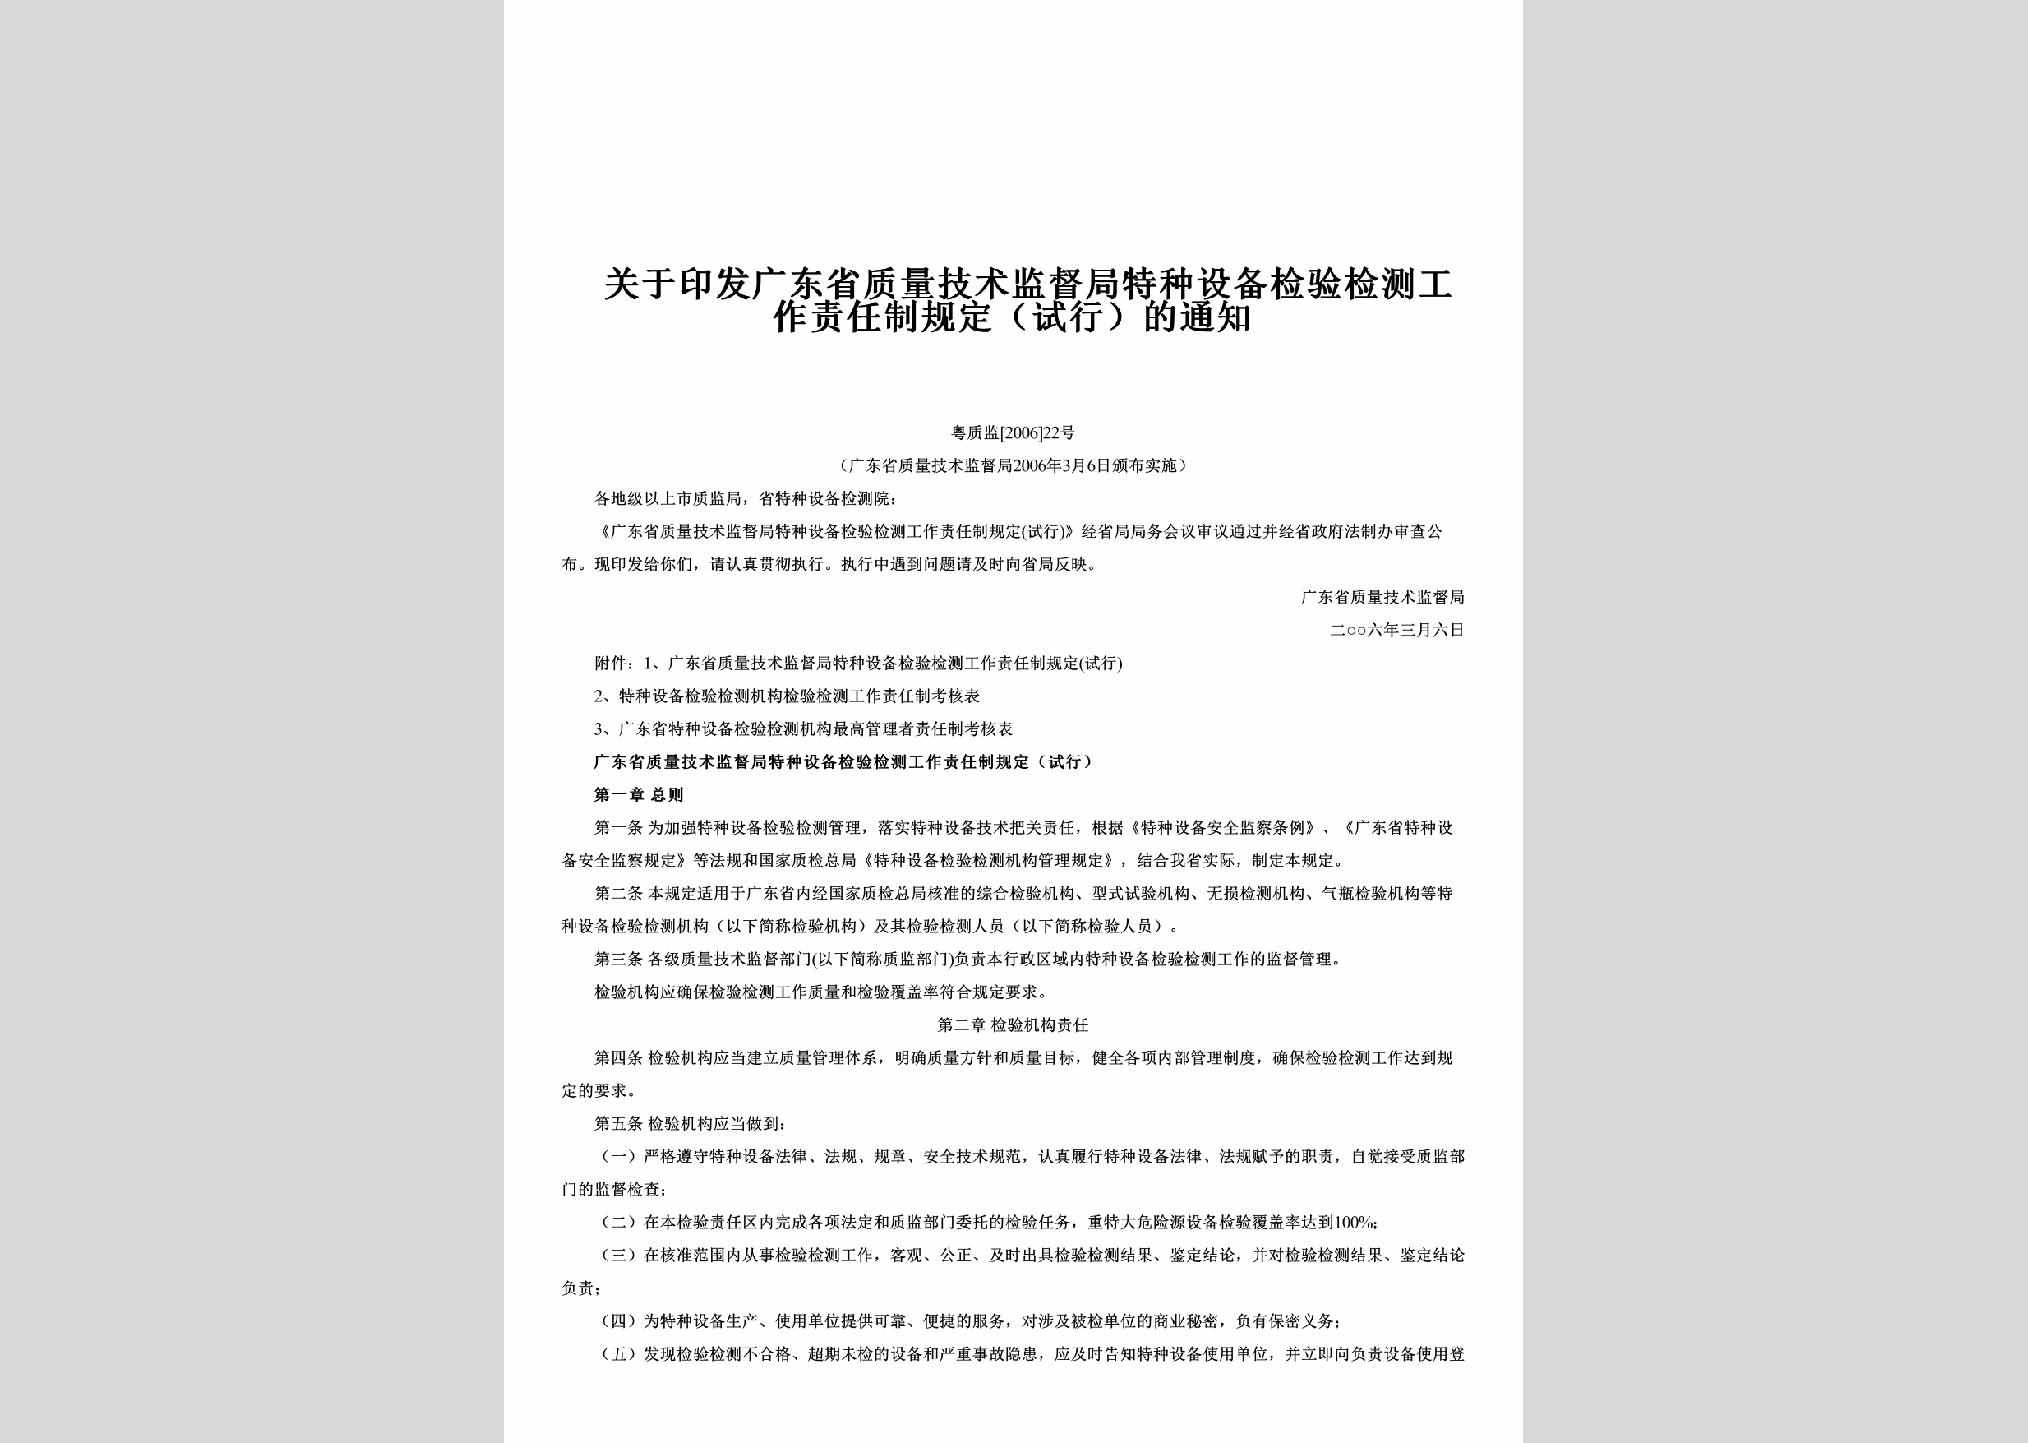 粤质监[2006]22号：关于印发广东省质量技术监督局特种设备检验检测工作责任制规定（试行）的通知